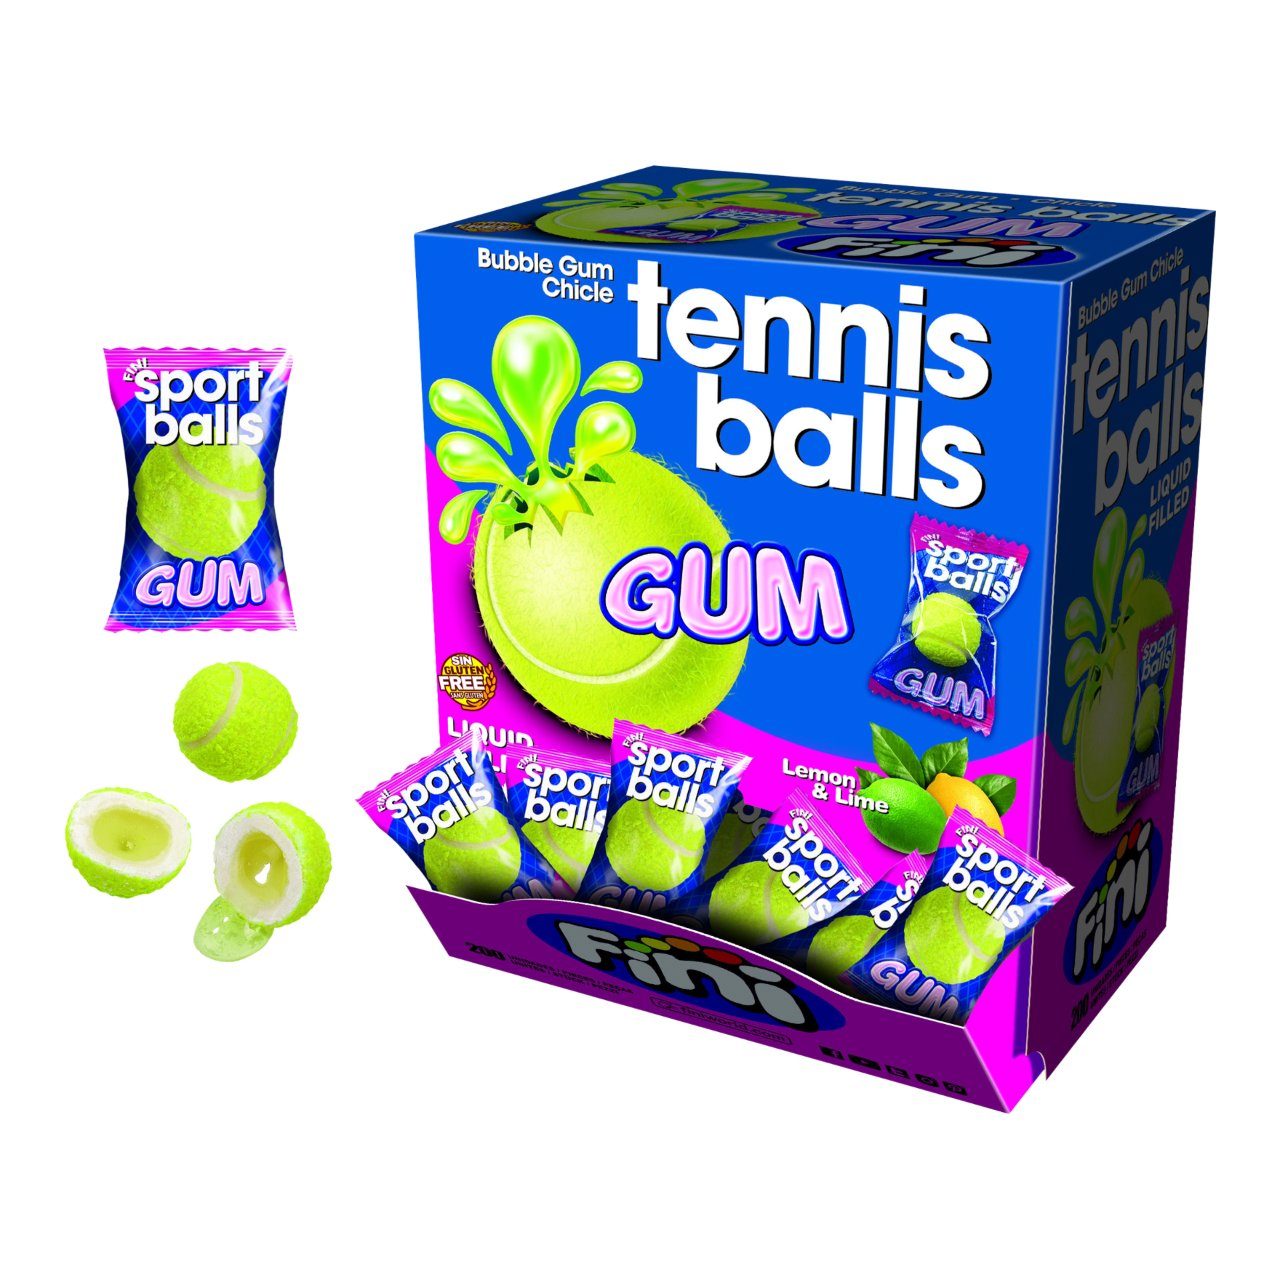 Bubble gum tennis balls